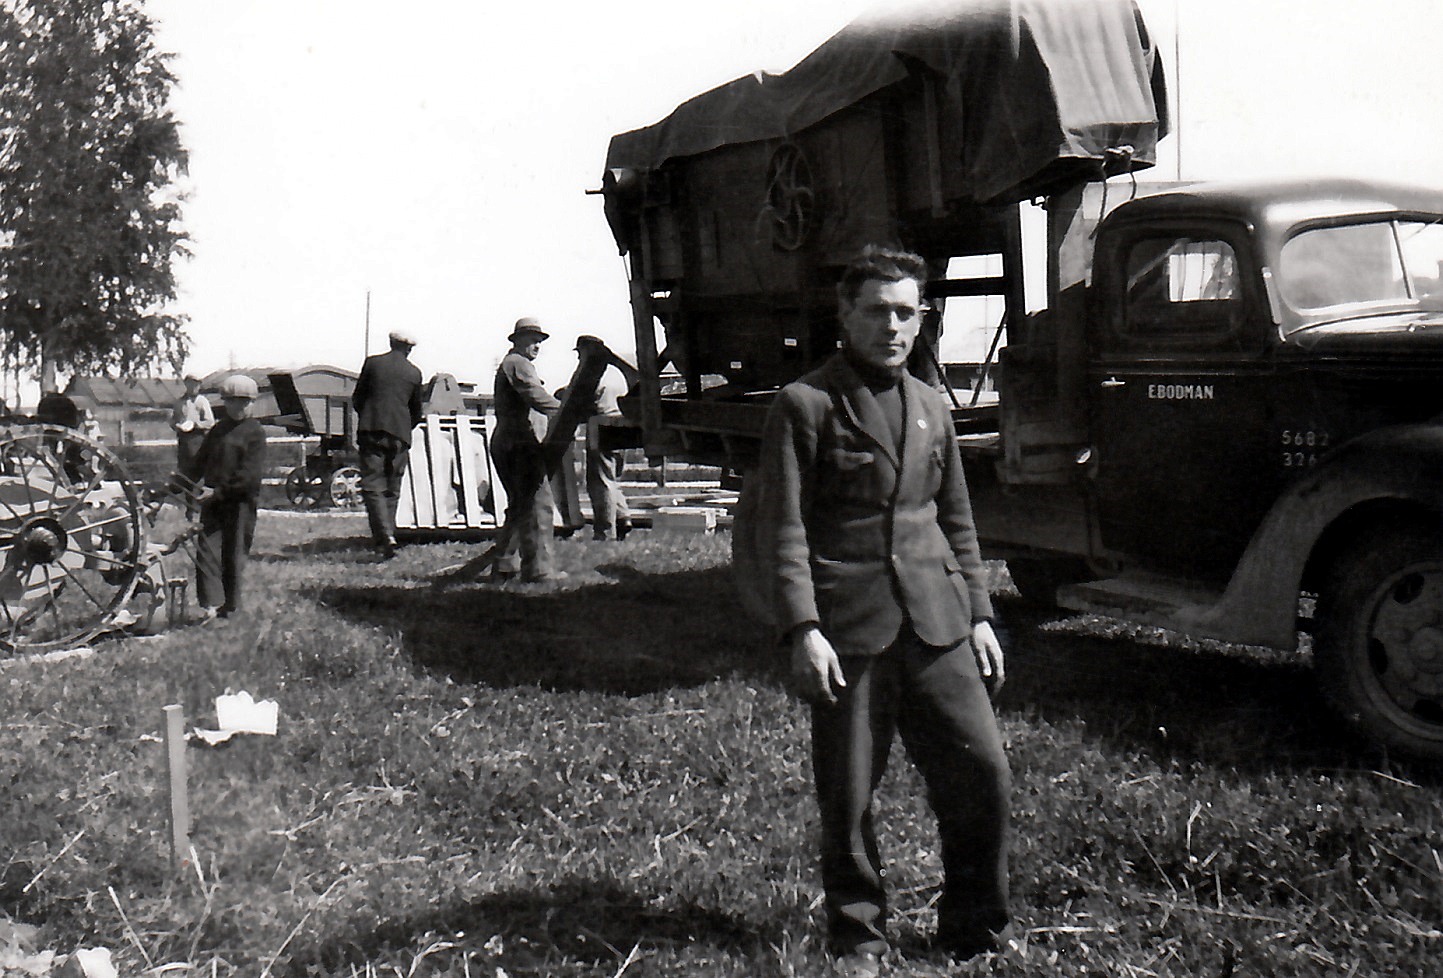 År 1938 var det en stor lantbruksutställning i Lappfjärd och här står Alfred Solfvin framför en lastbil som transporterar någonting som ser ut som ett tröskverk. Foto Selim Björses, Österbottens Traditionsarkiv.